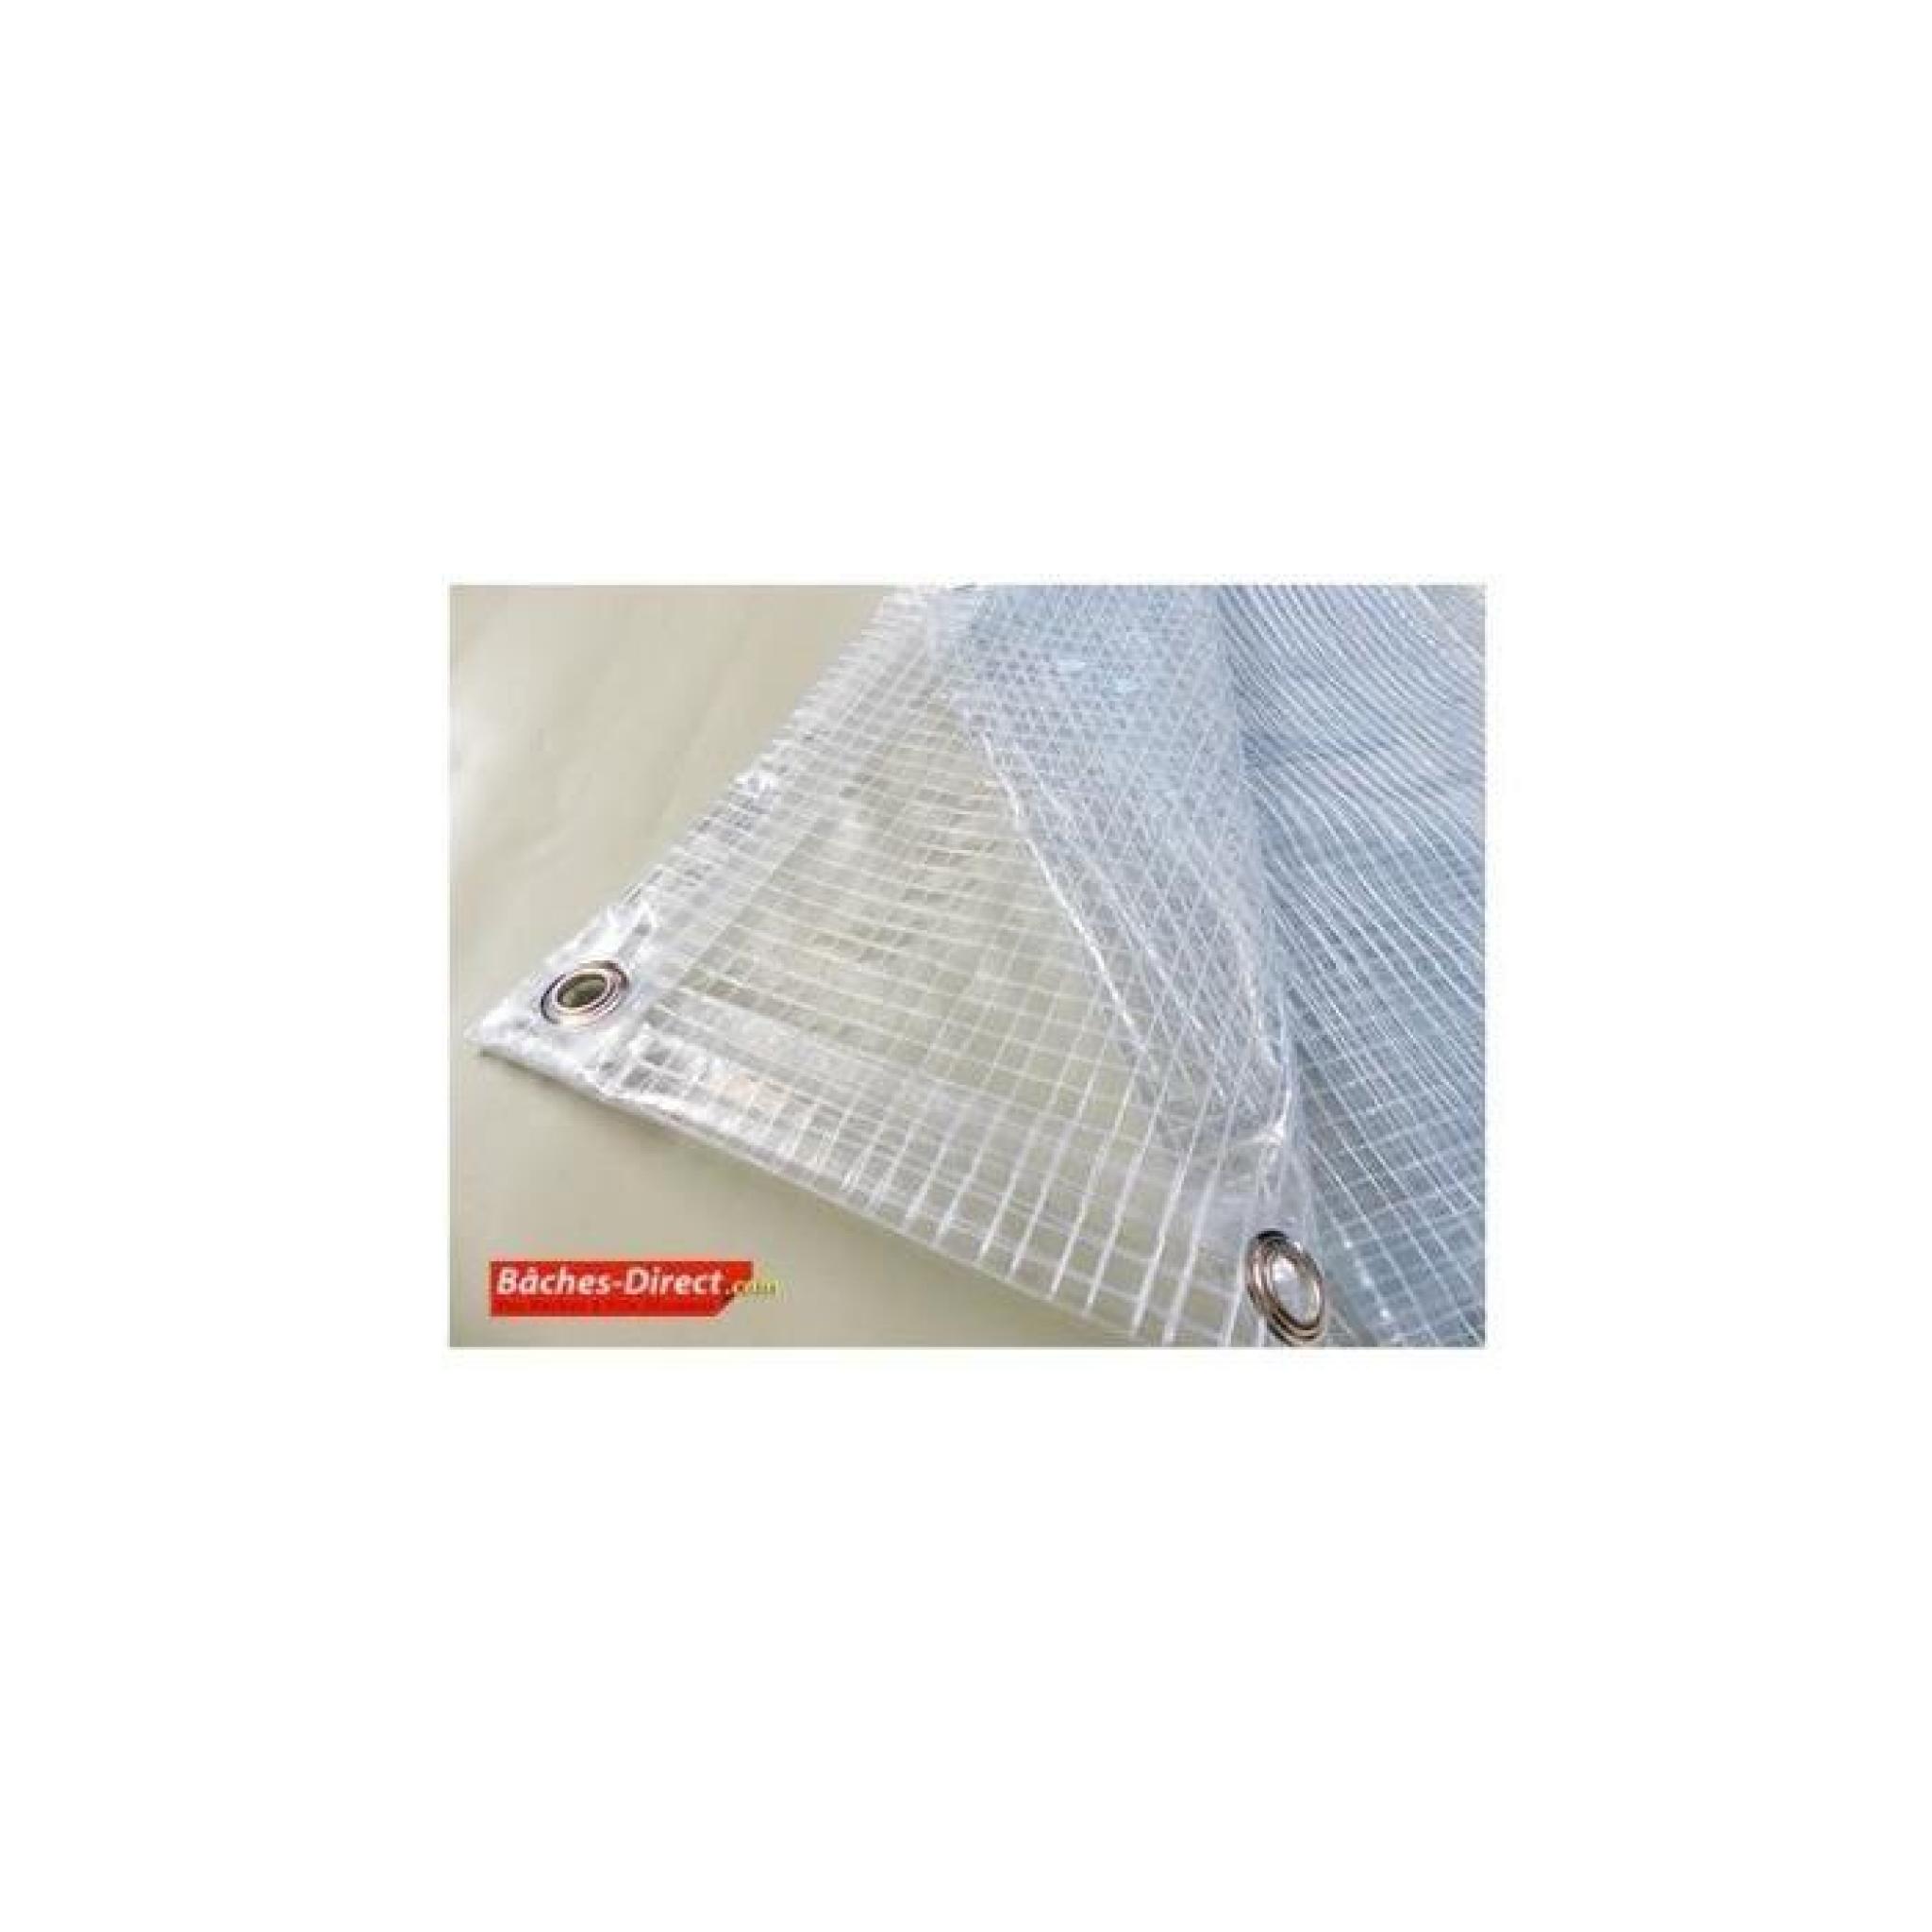 BACHES DIRECT - Bâche Pergola 400 g/m² - 5.8 x 6 m - bache transparente pour toile de pergola - bache imperméable Transparente Armée